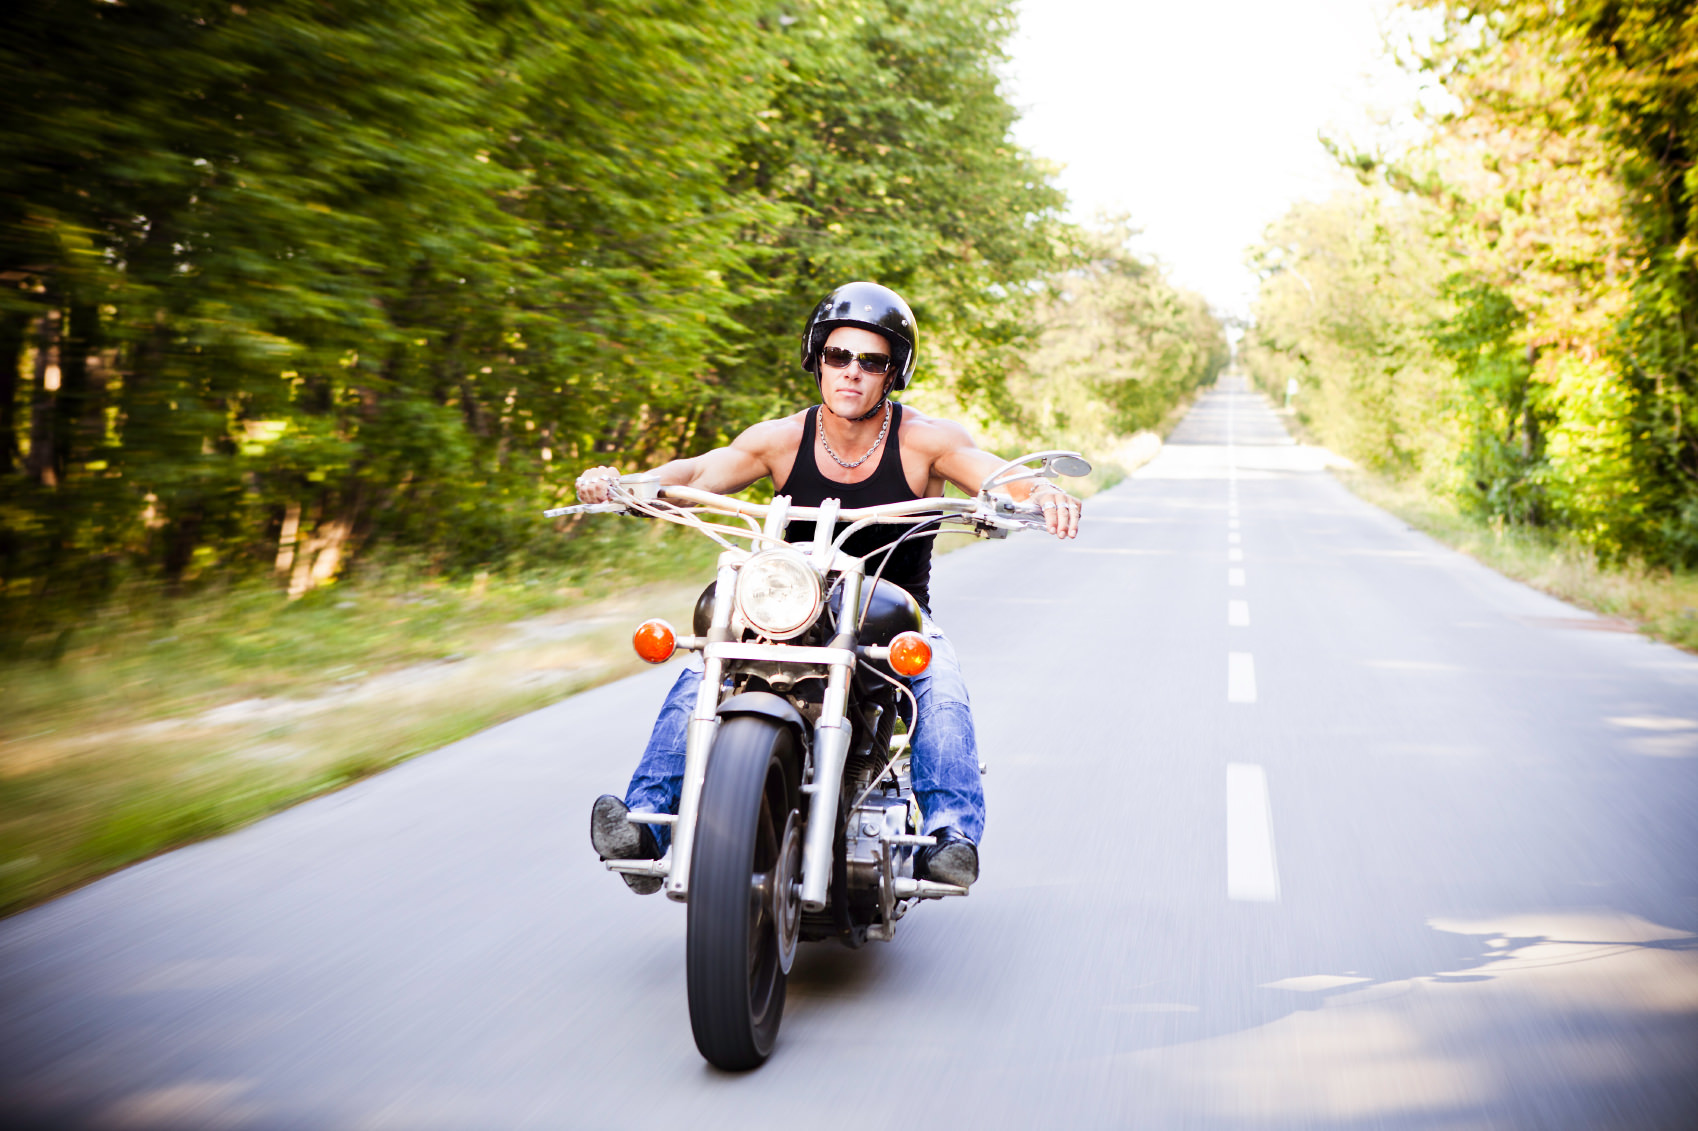 Wer will mit mir Biken? – Finde deinen Motorrad-Partner!